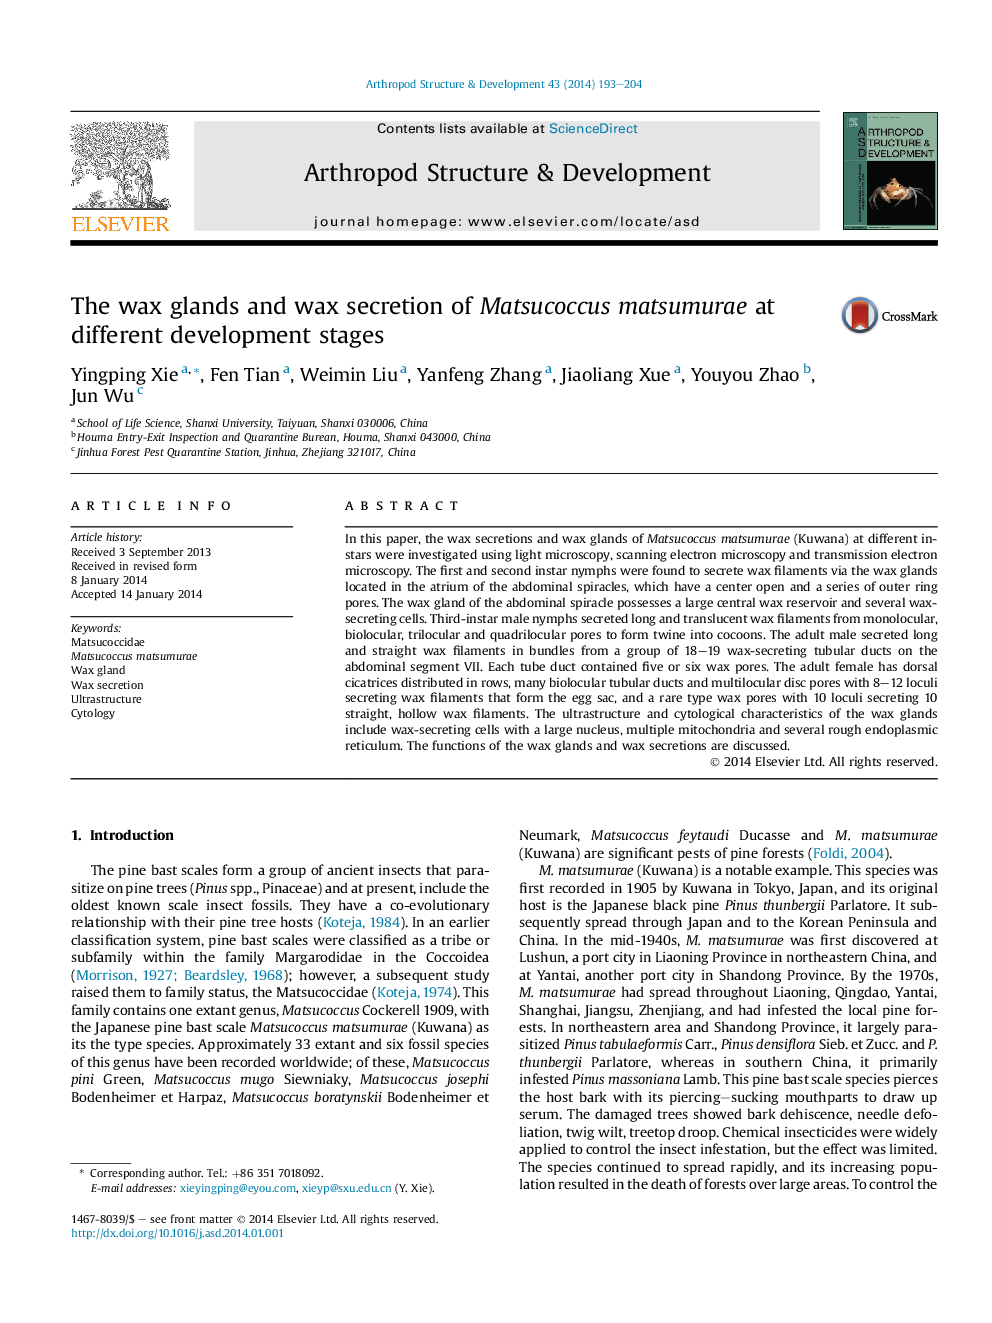 غده موم و ترشحات موم ماتسوکوک ماتسوموره در مراحل مختلف رشد 